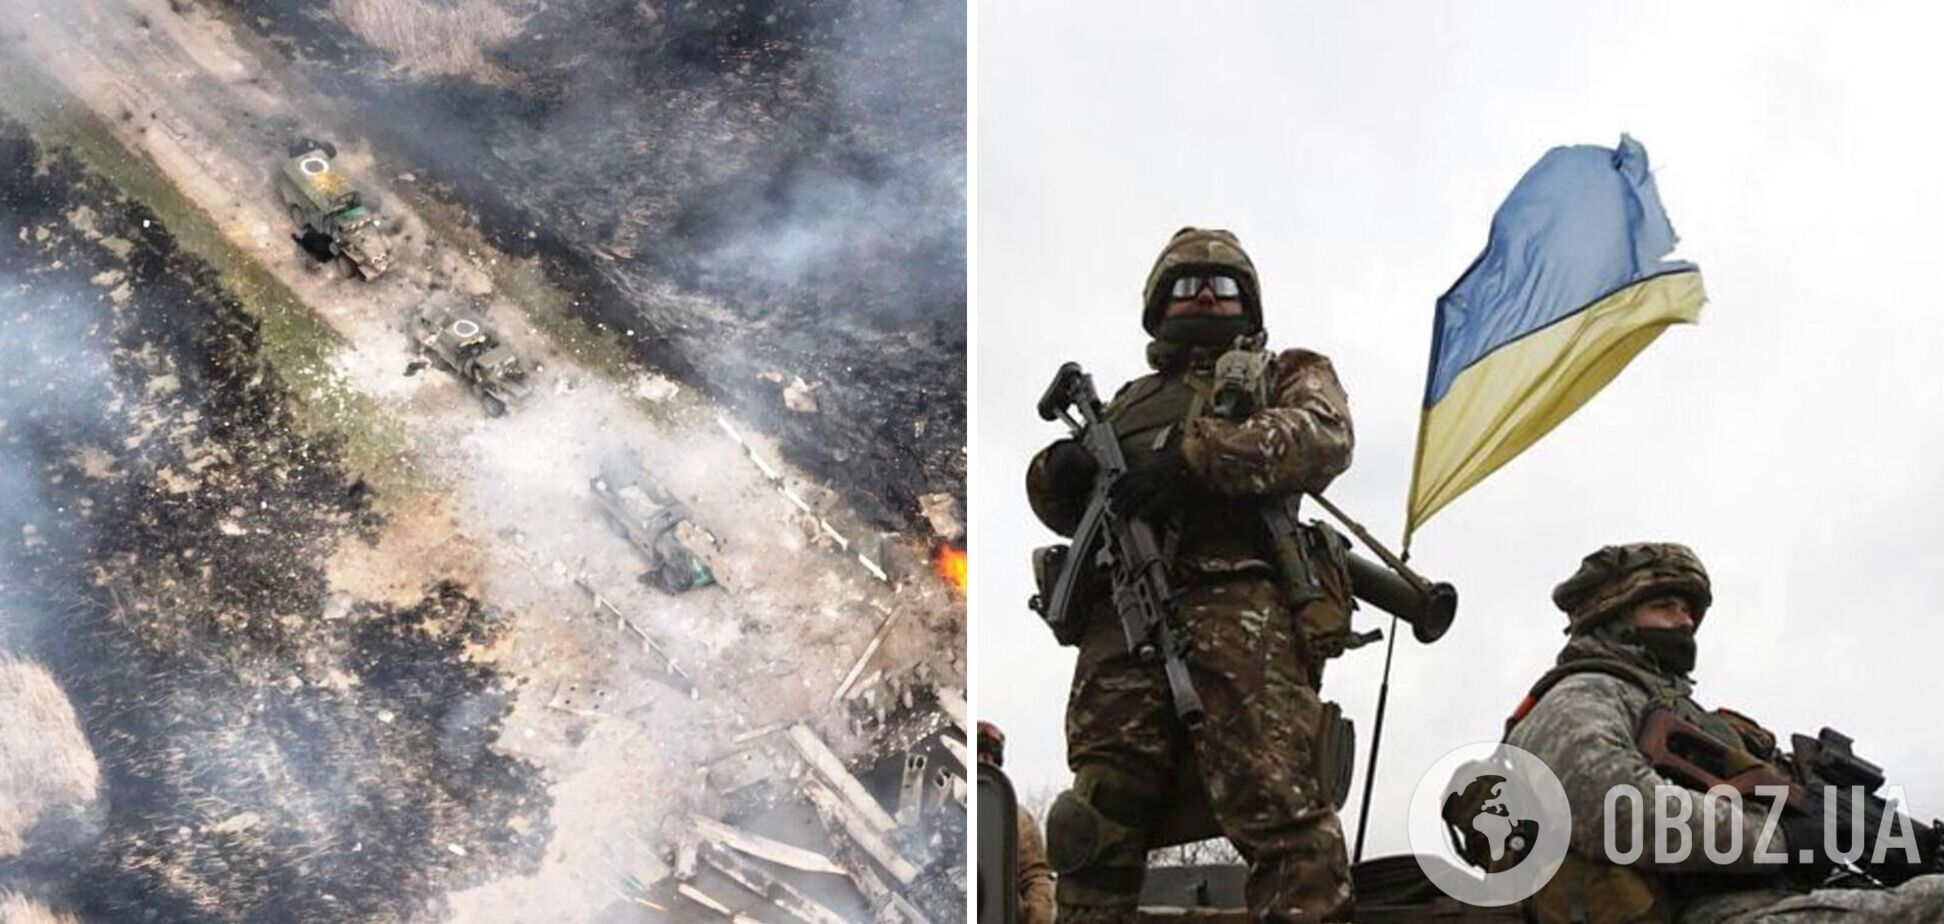 Українські десантники знищили колону військової техніки окупантів. Фото